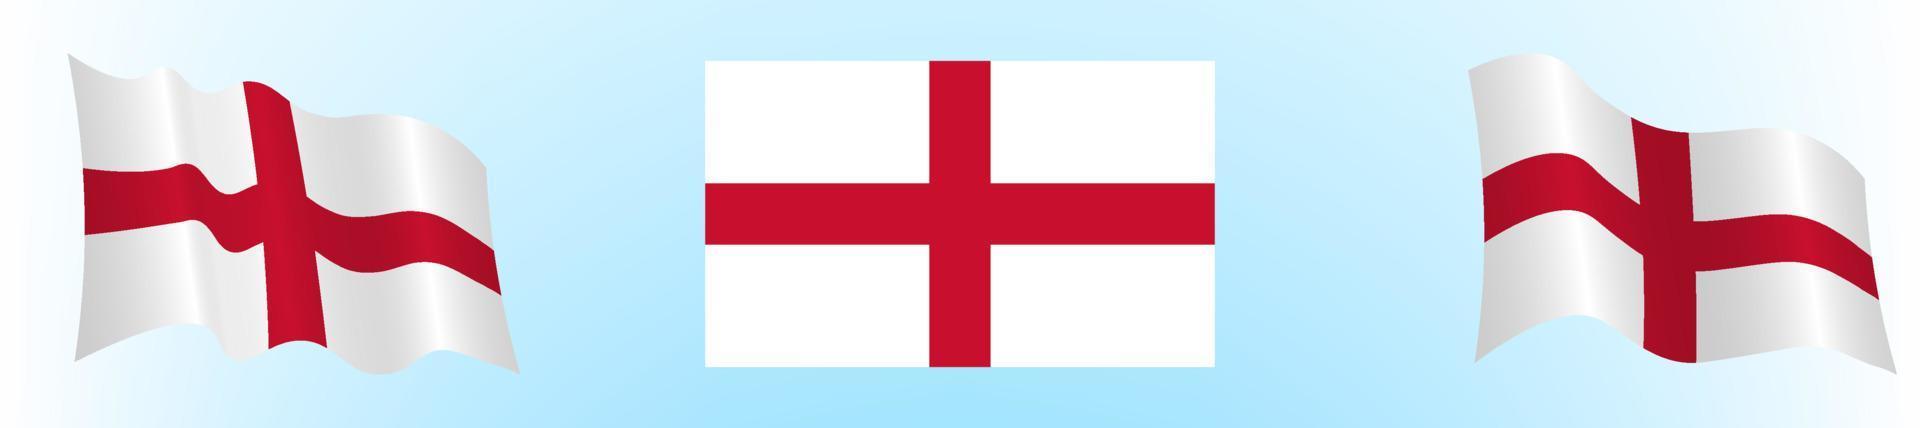 Flagge Englands in statischer Position und in Bewegung, sich im Wind entwickelnd, auf transparentem Hintergrund vektor